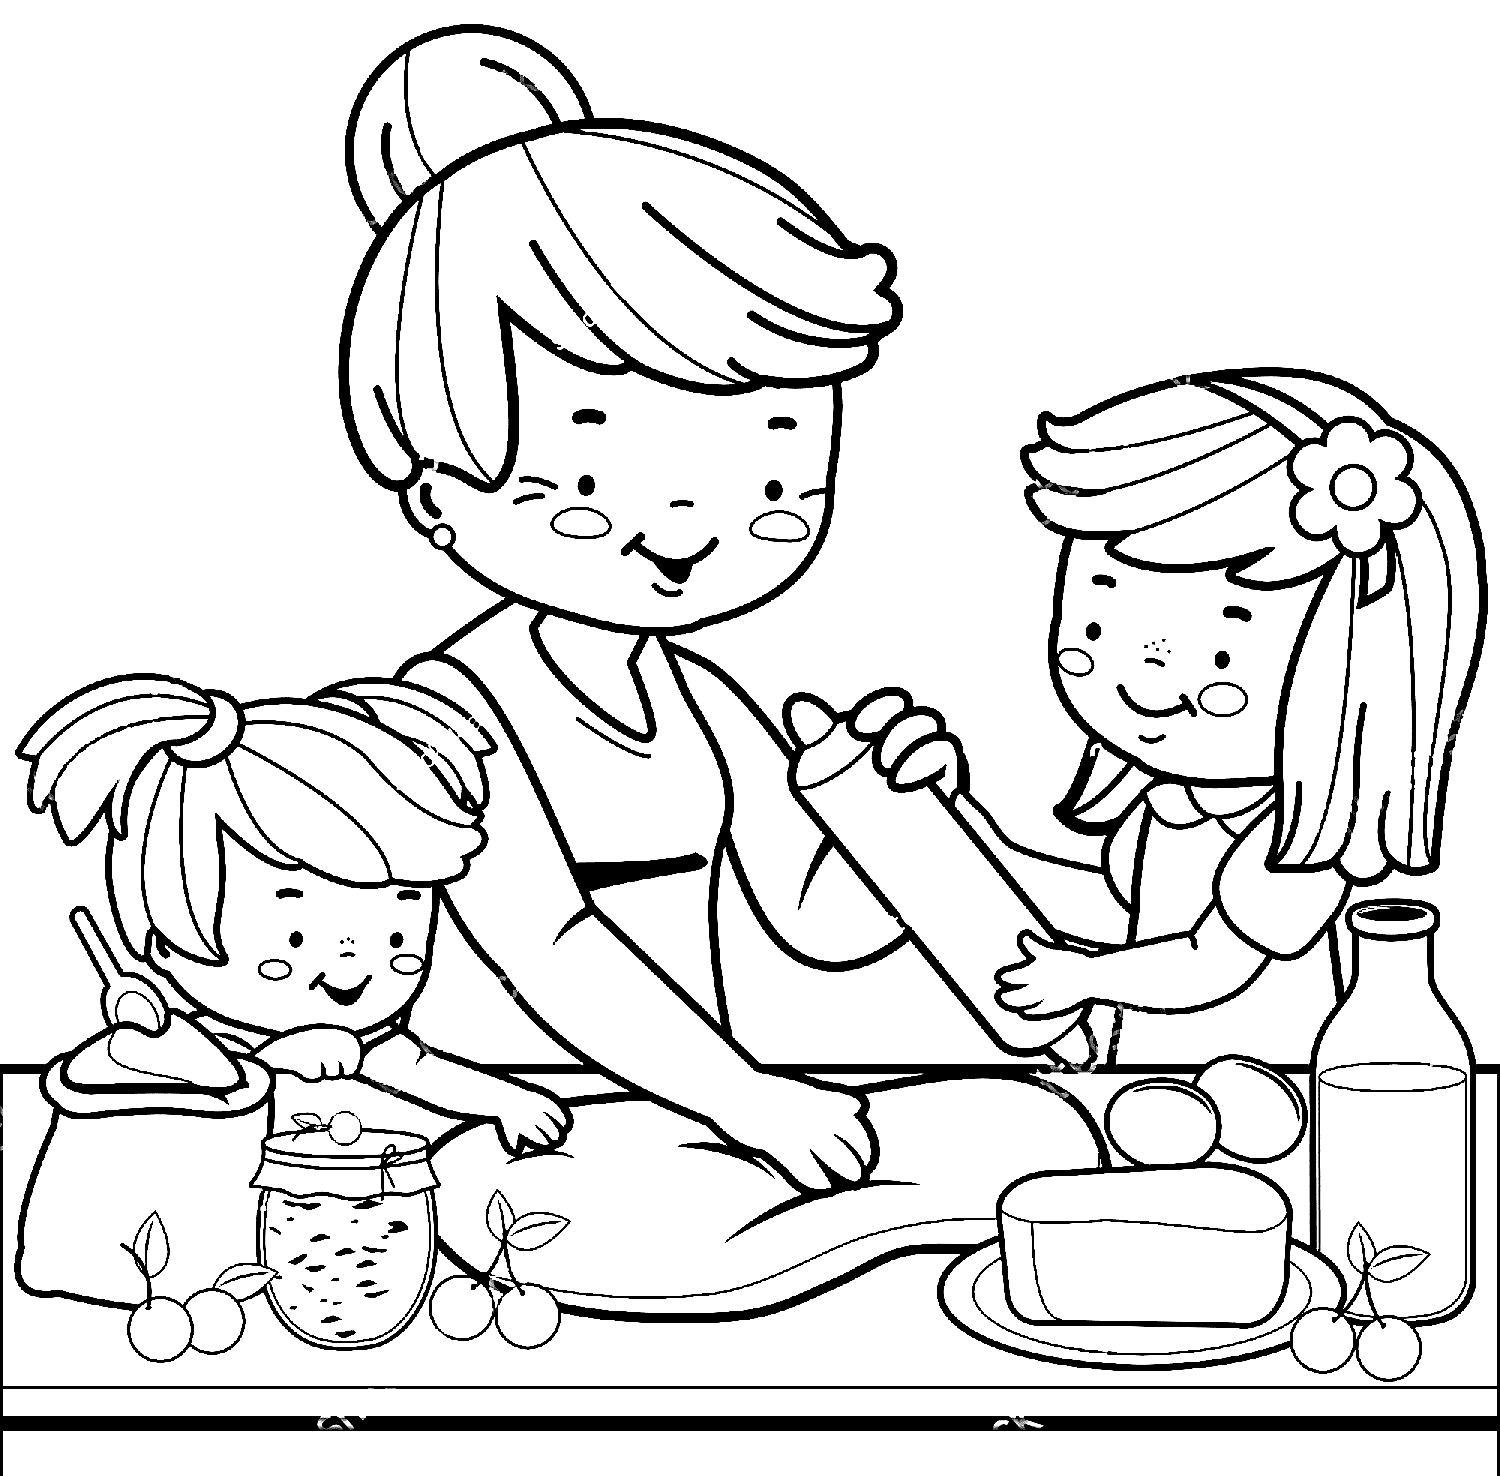 La nonna e i bambini preparano torte in famiglia